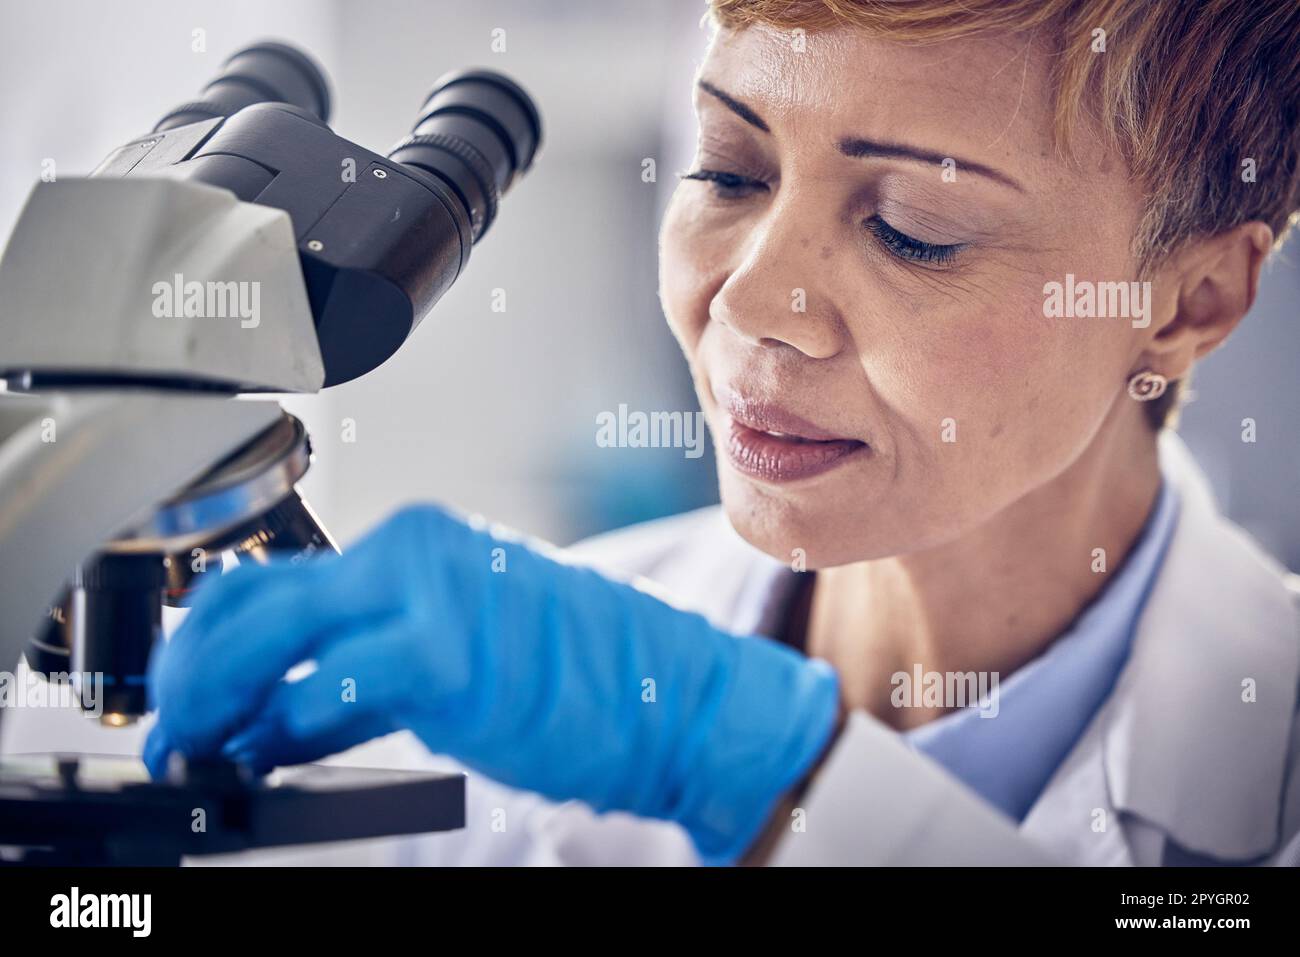 Wissenschaft, Labor und schwarze Frau mit Mikroskop, Forschung zur Impfstoffentwicklung. Gesundheitswesen, medizinische Innovation und leitende Wissenschaftlerin im Krankenhauslabor, die pharmazeutische Testergebnisse betrachtet Stockfoto